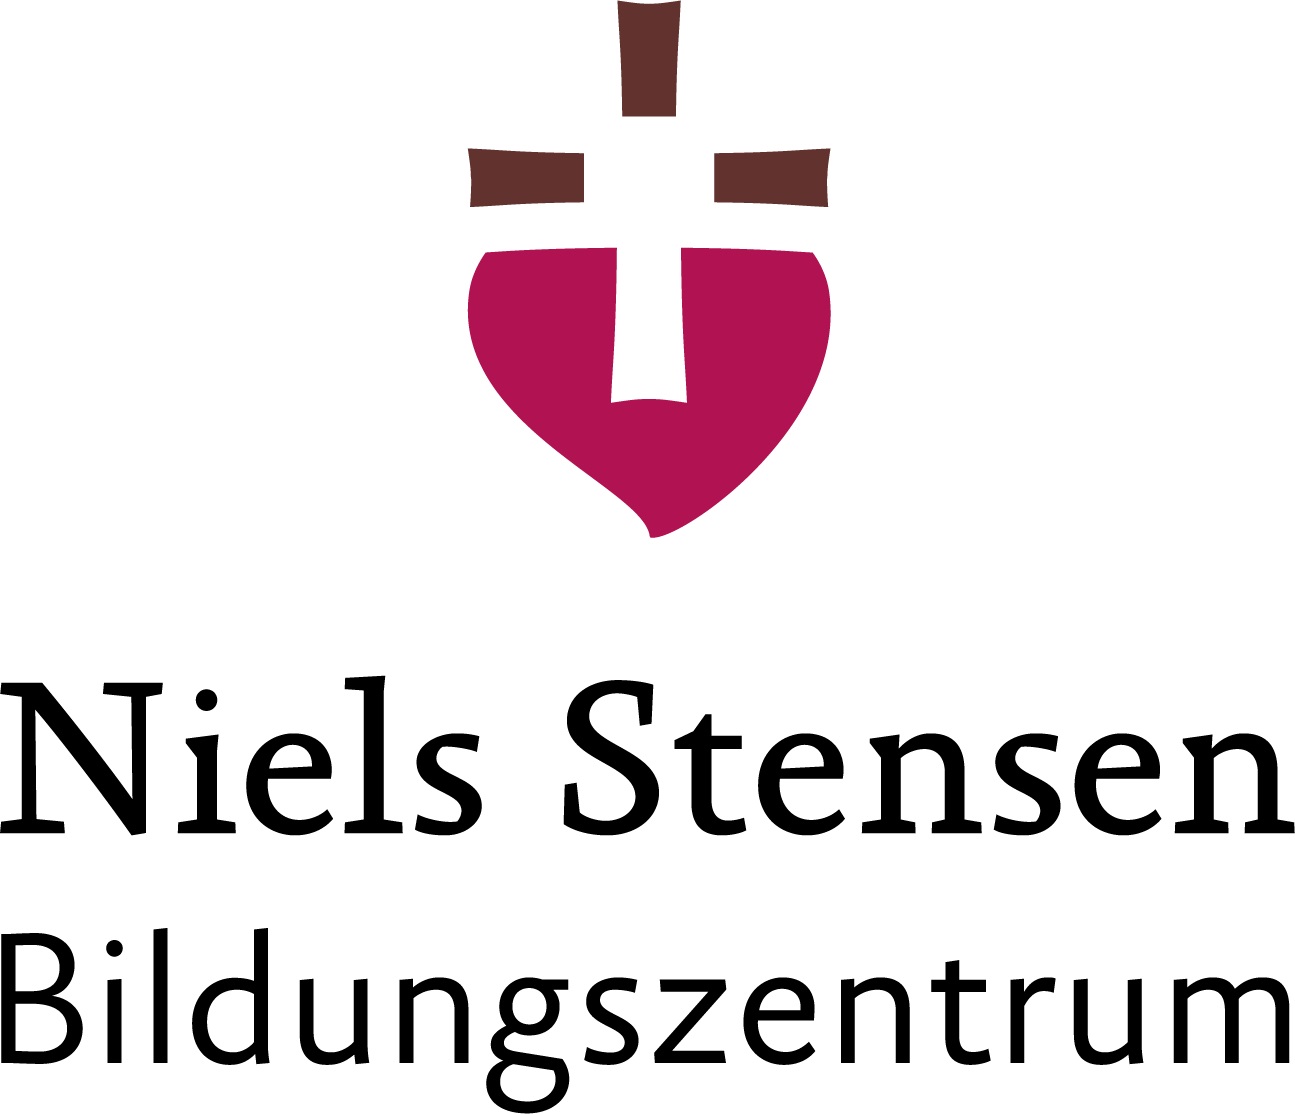 Niels Stensen Bildungszentrum